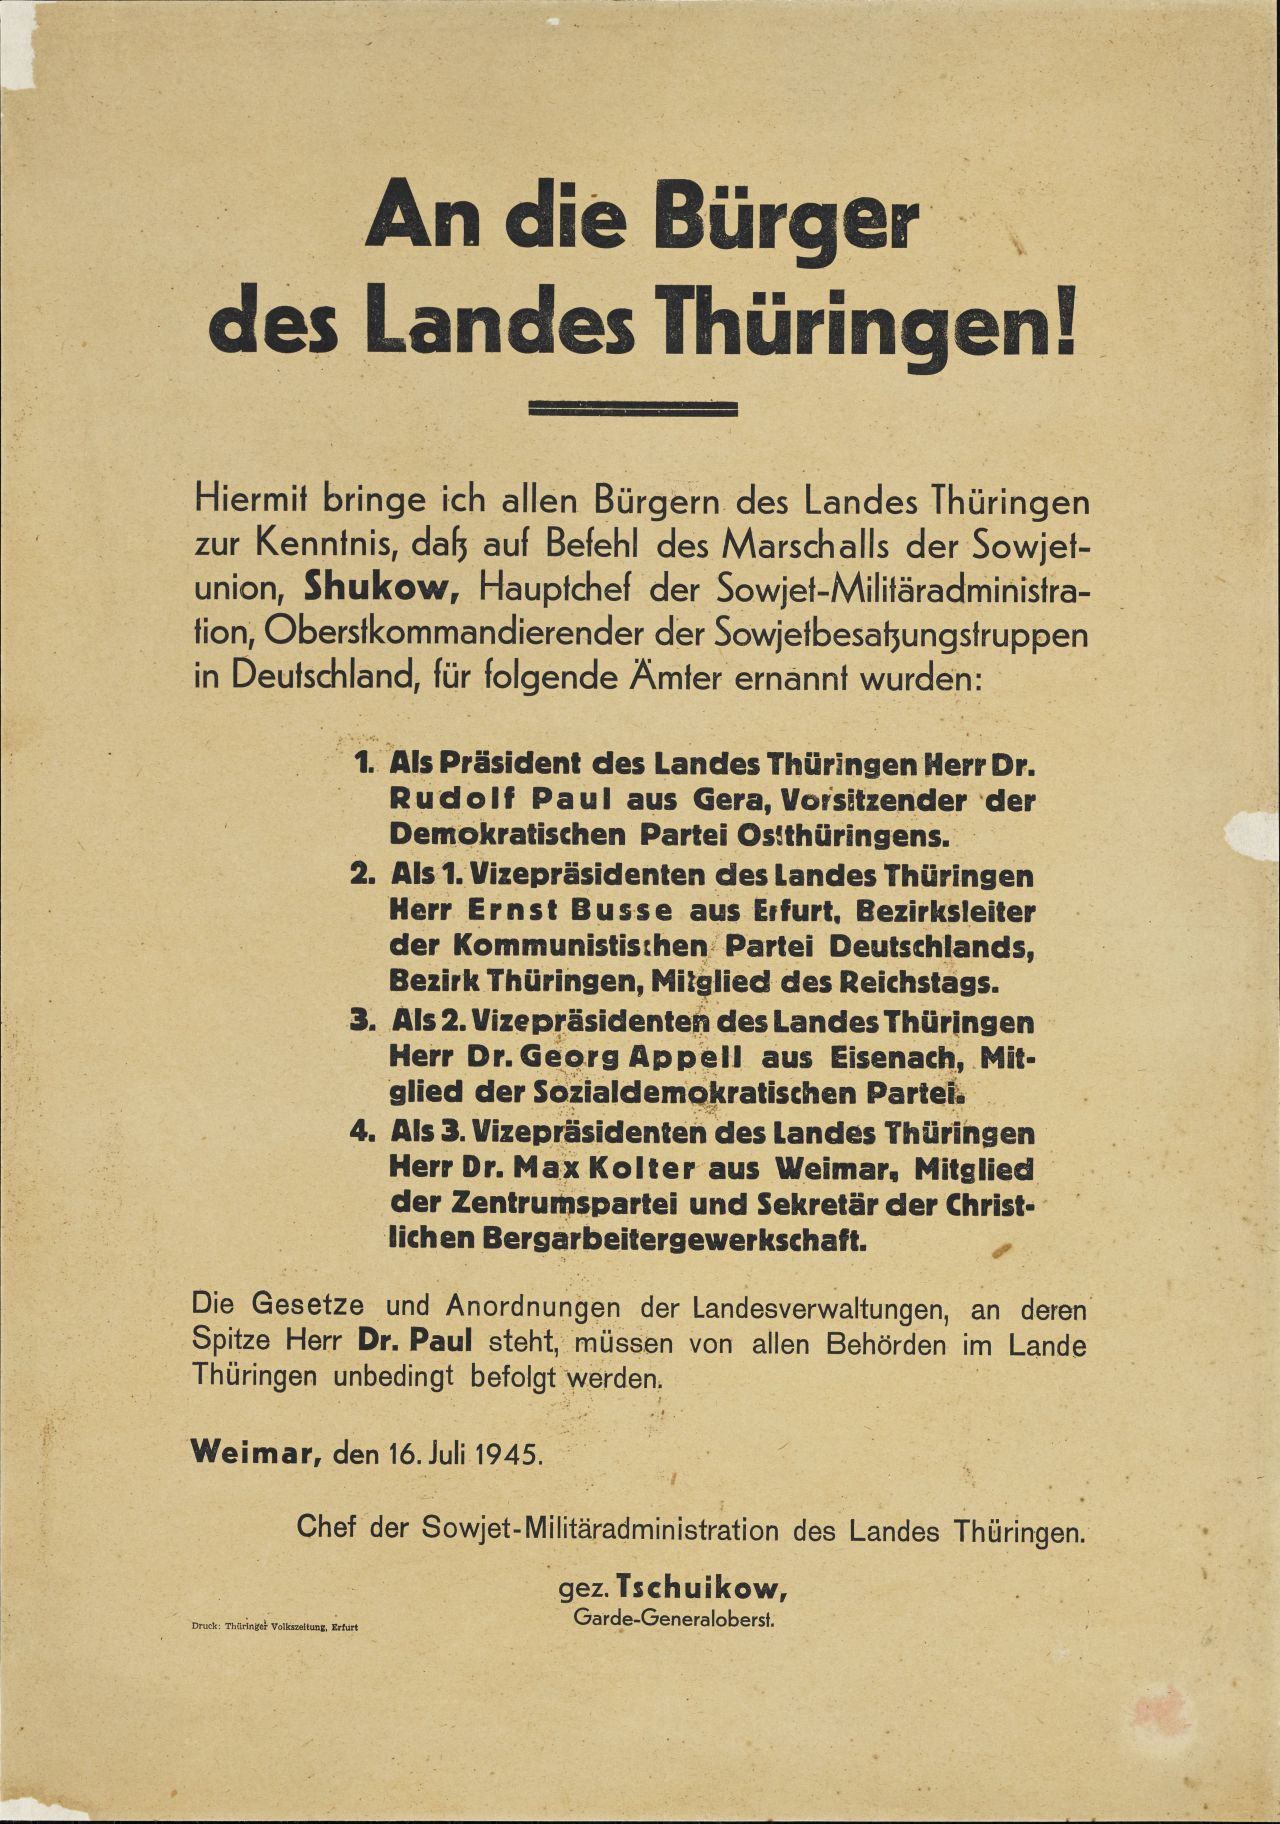 Weißes Textplakat: Befehl des Marschalls der Sowjetunion, Schukow, zur Verteilung wichtiger Ämter in Thüringen